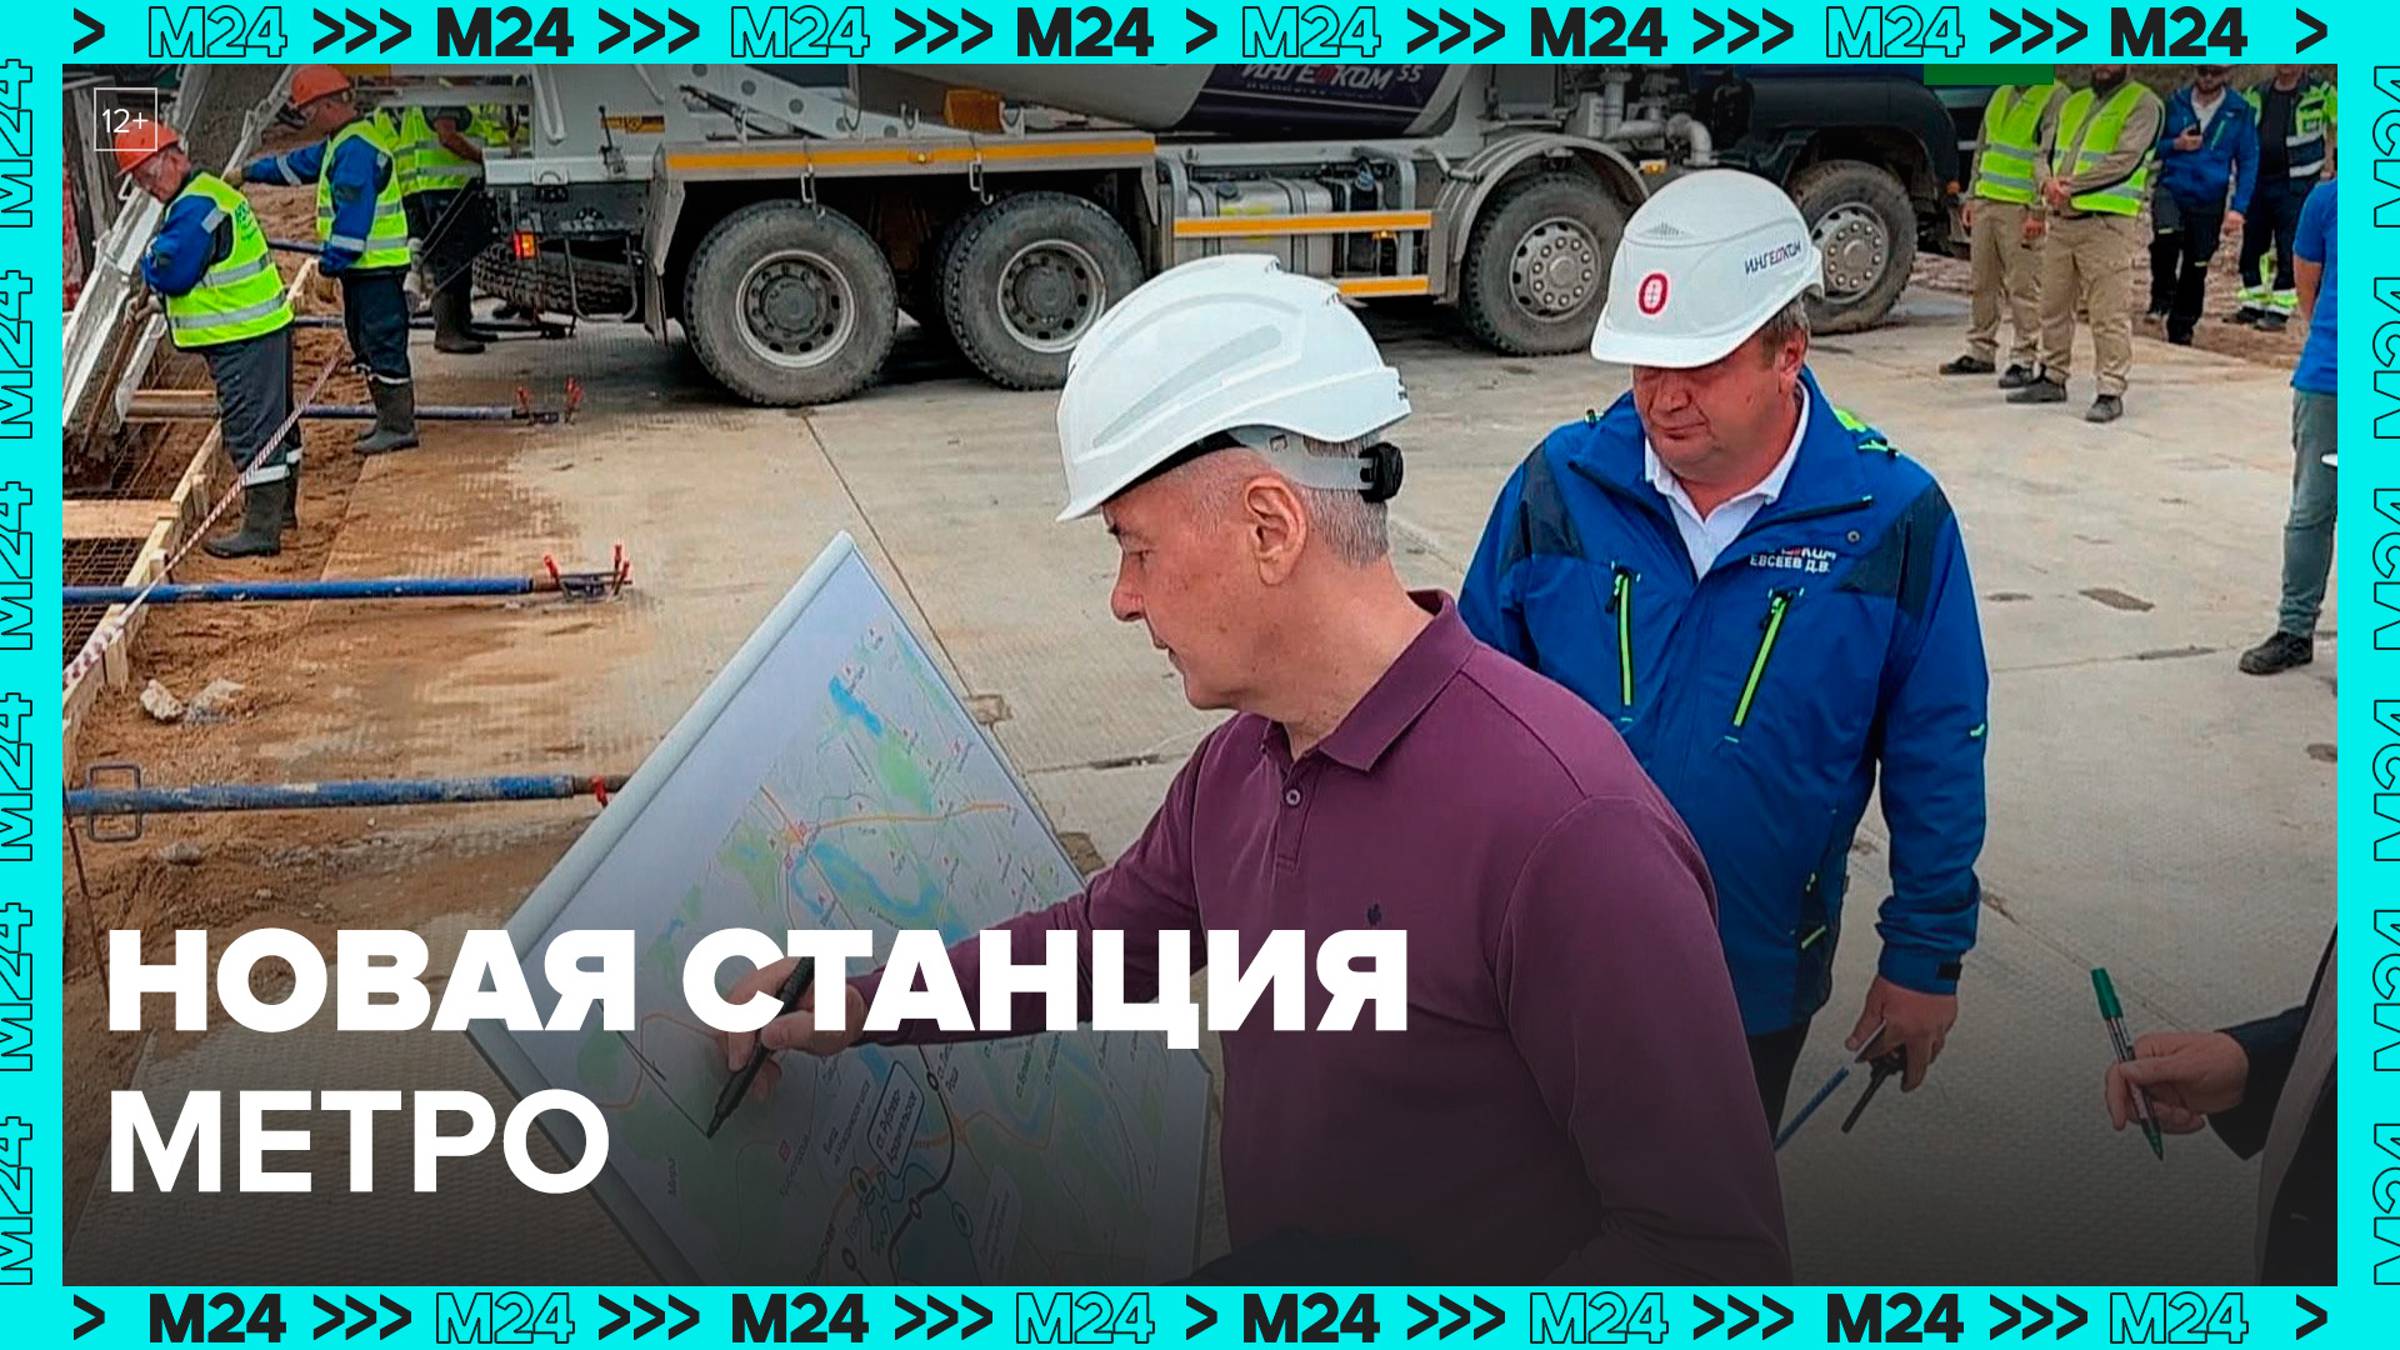 В столице начинают строительство новой станции метро «Рублёво-Архангельское» - Москва 24